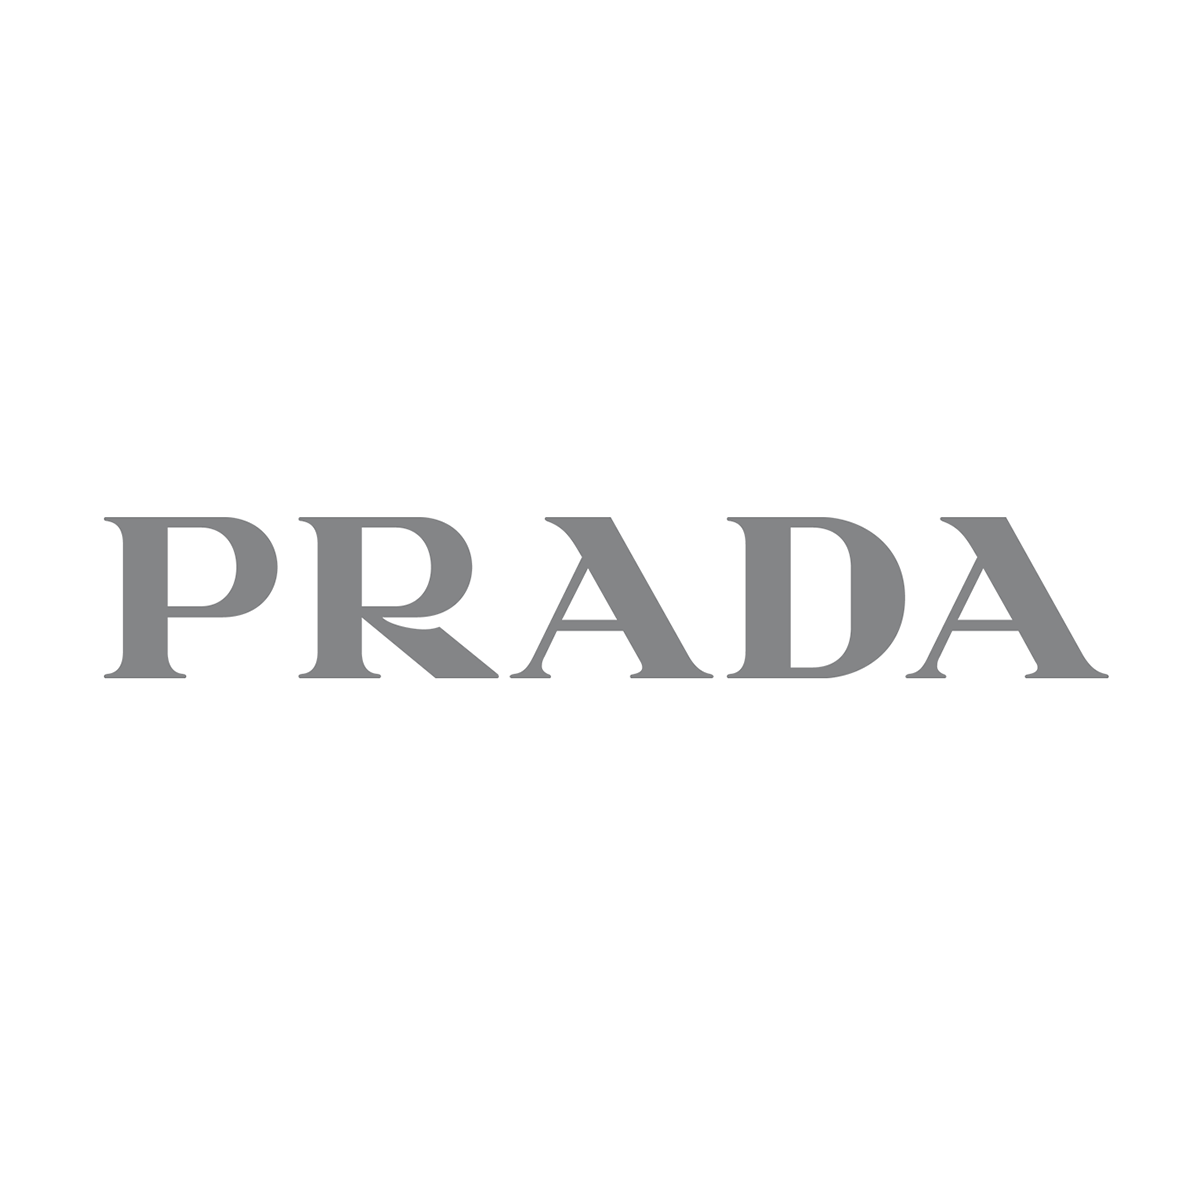 PRADA – Perfumería First Bolivia